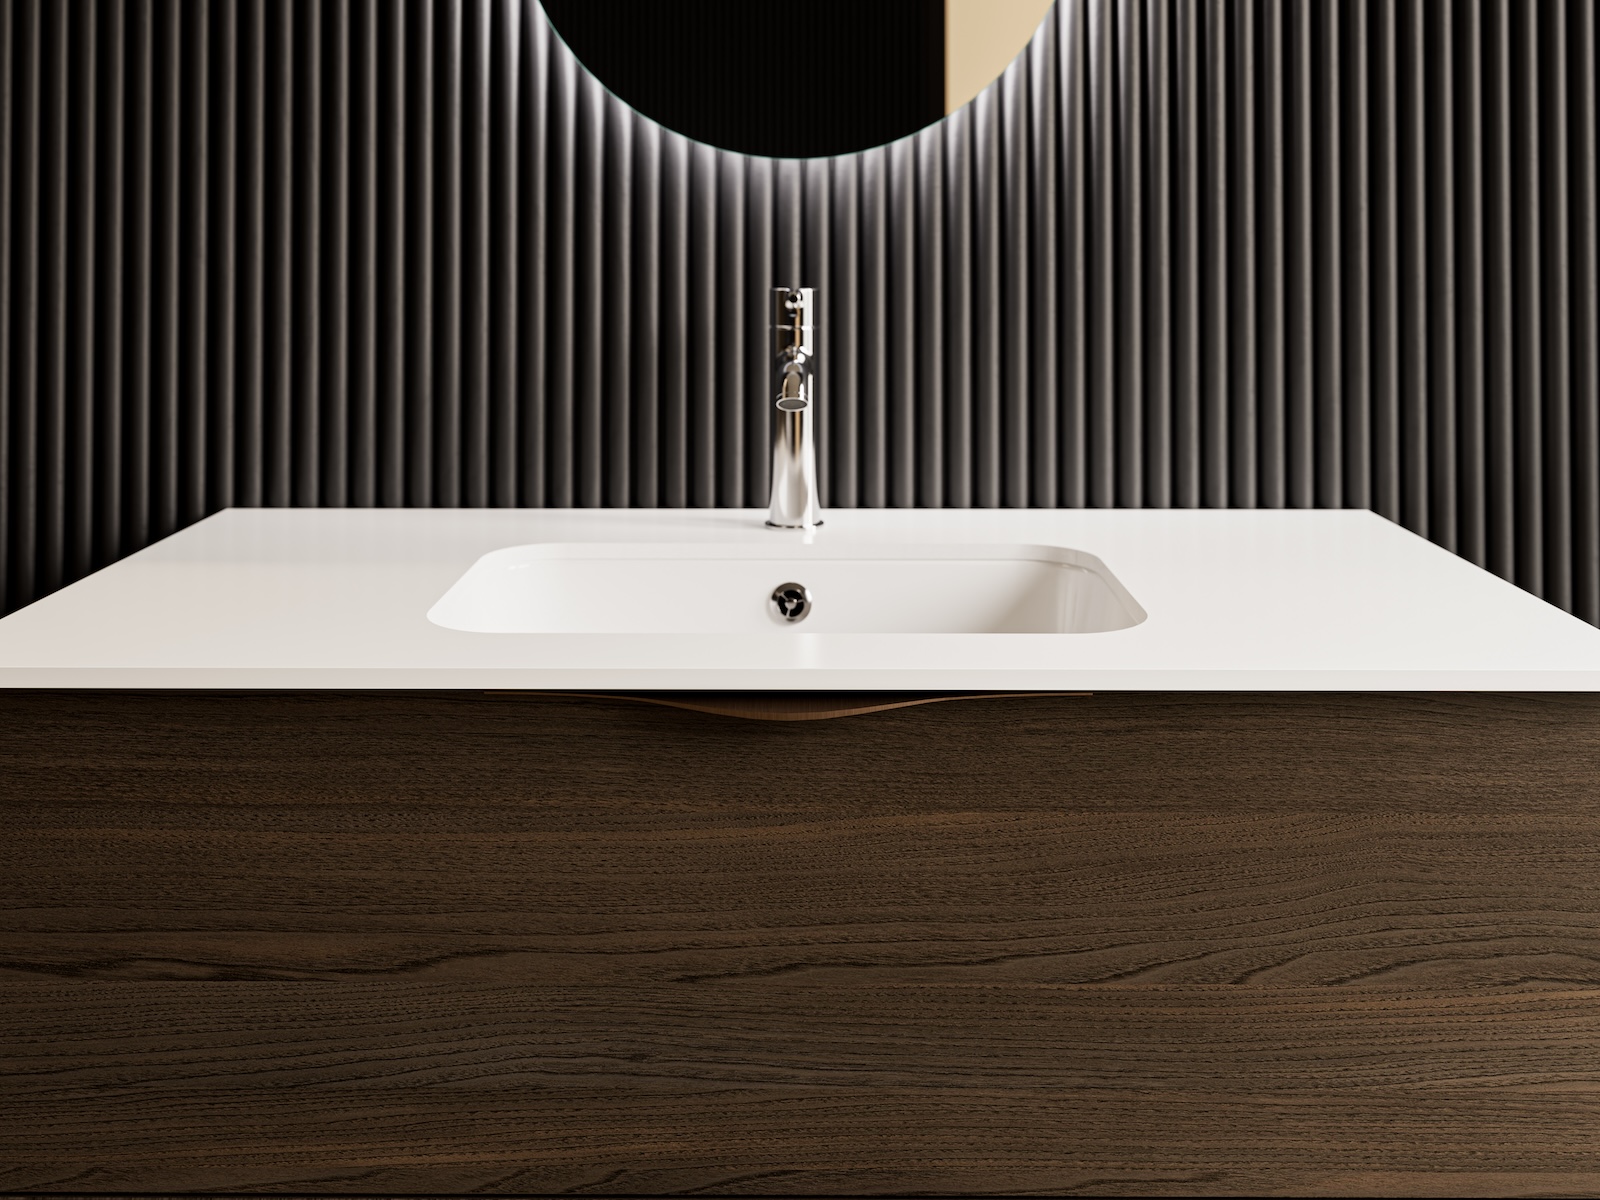 TEMAL kylpyhuone, Design, skandinaavinen kylpyhuone, valkoinen alta liimattava allas, tumma puu, lähikuva